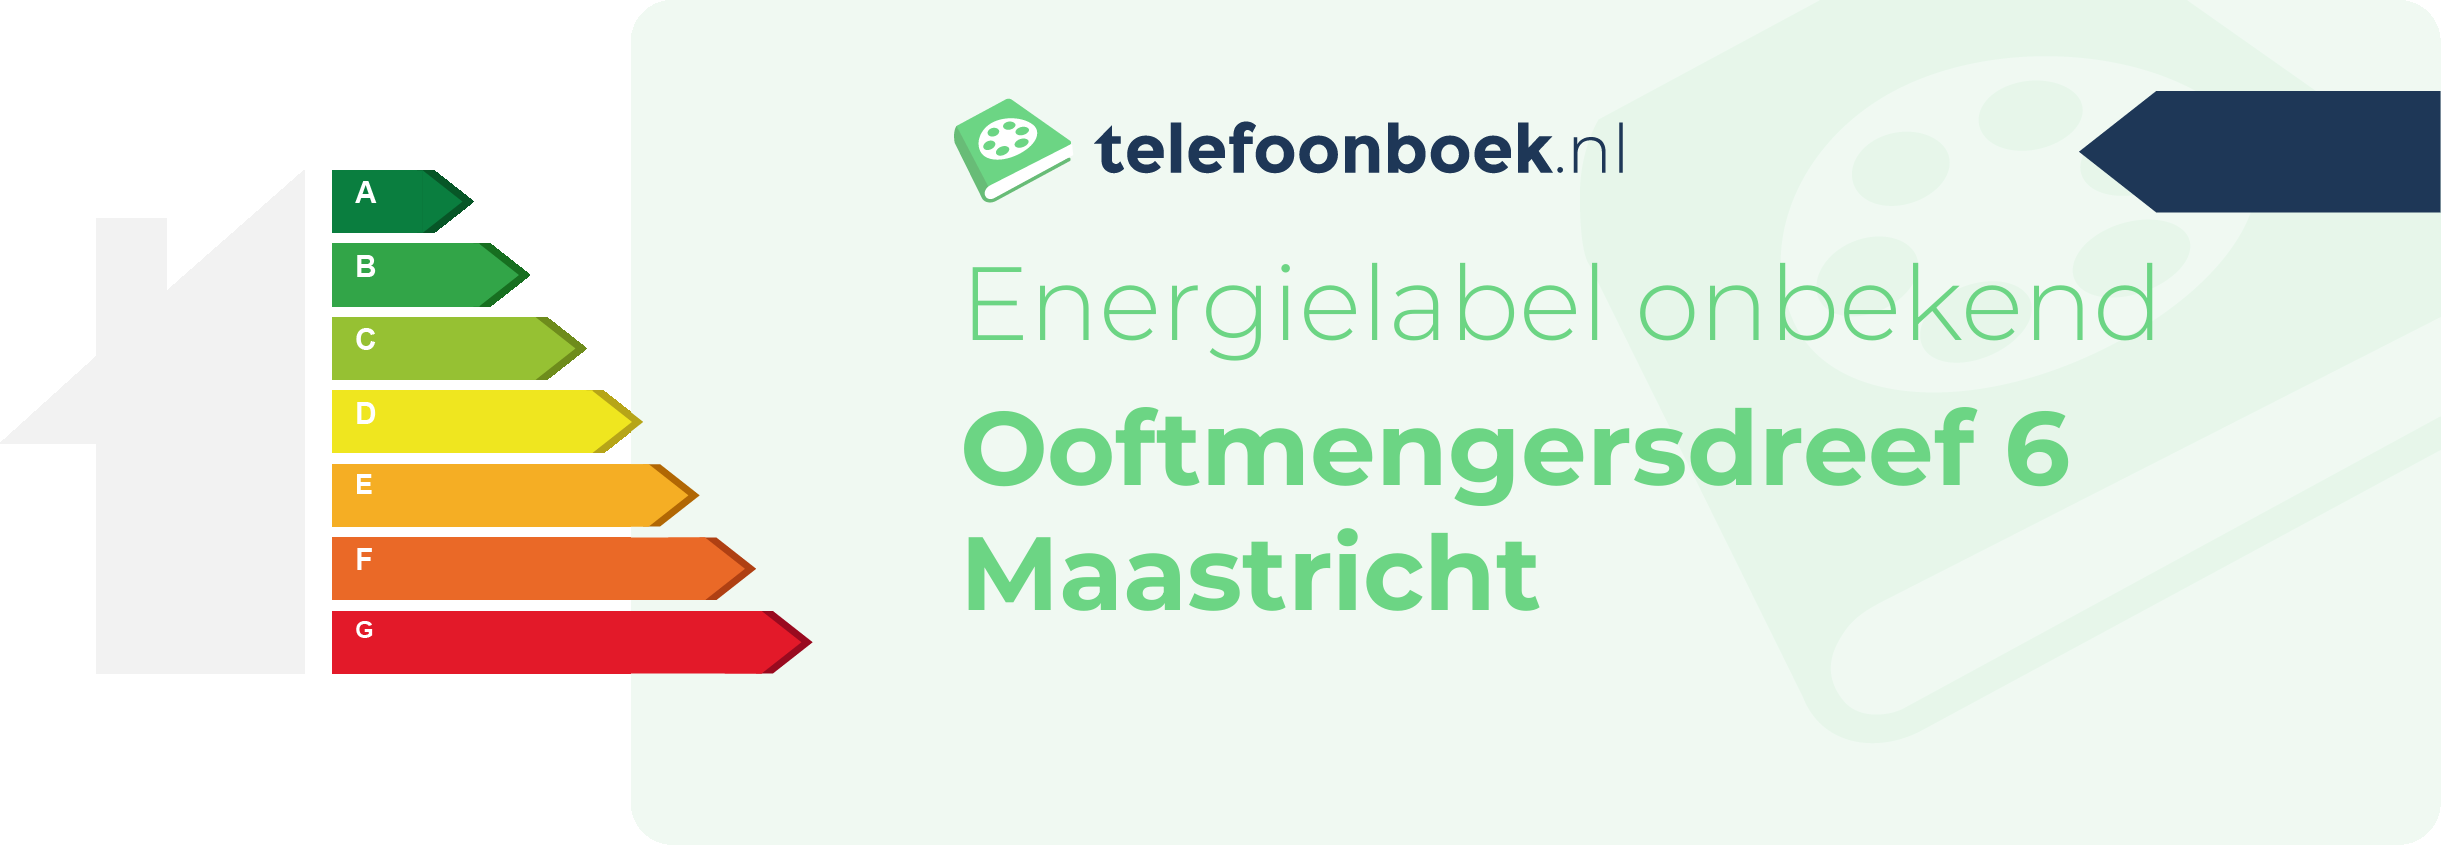 Energielabel Ooftmengersdreef 6 Maastricht